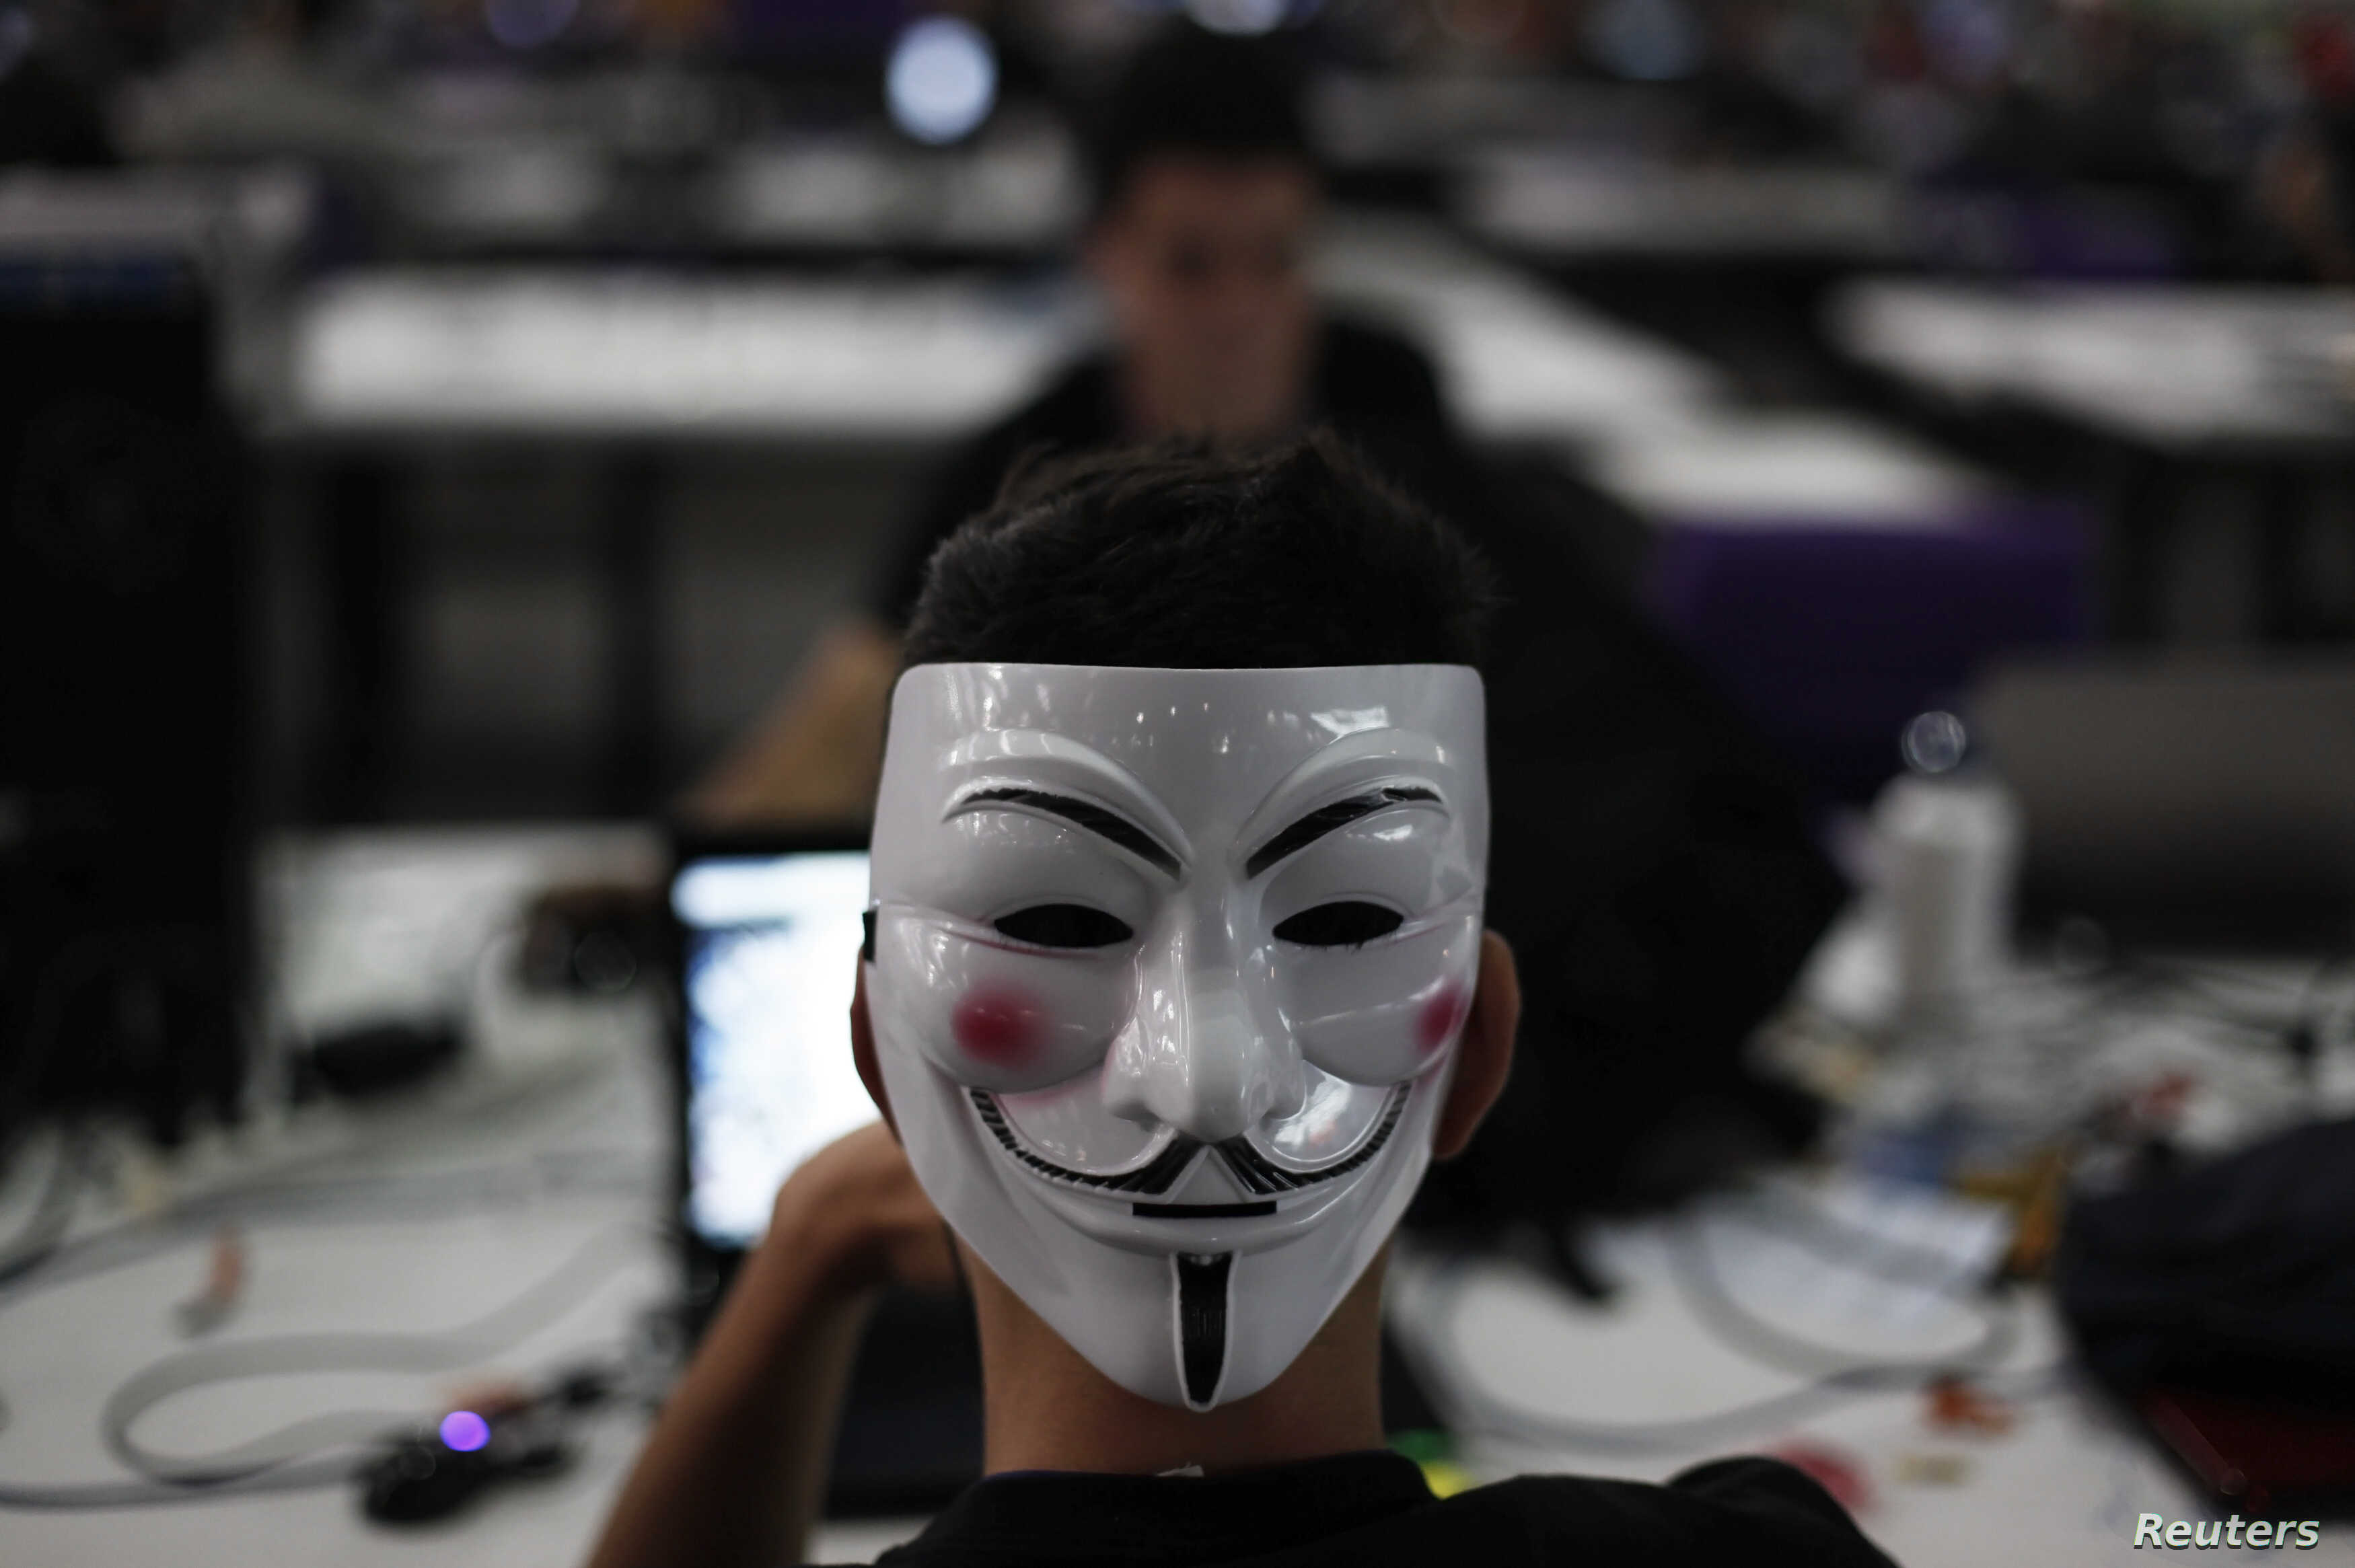 Хакеры из Anonymous запустили криптовалюту для борьбы с Илоном Маском и запретом на майнинг в Китае